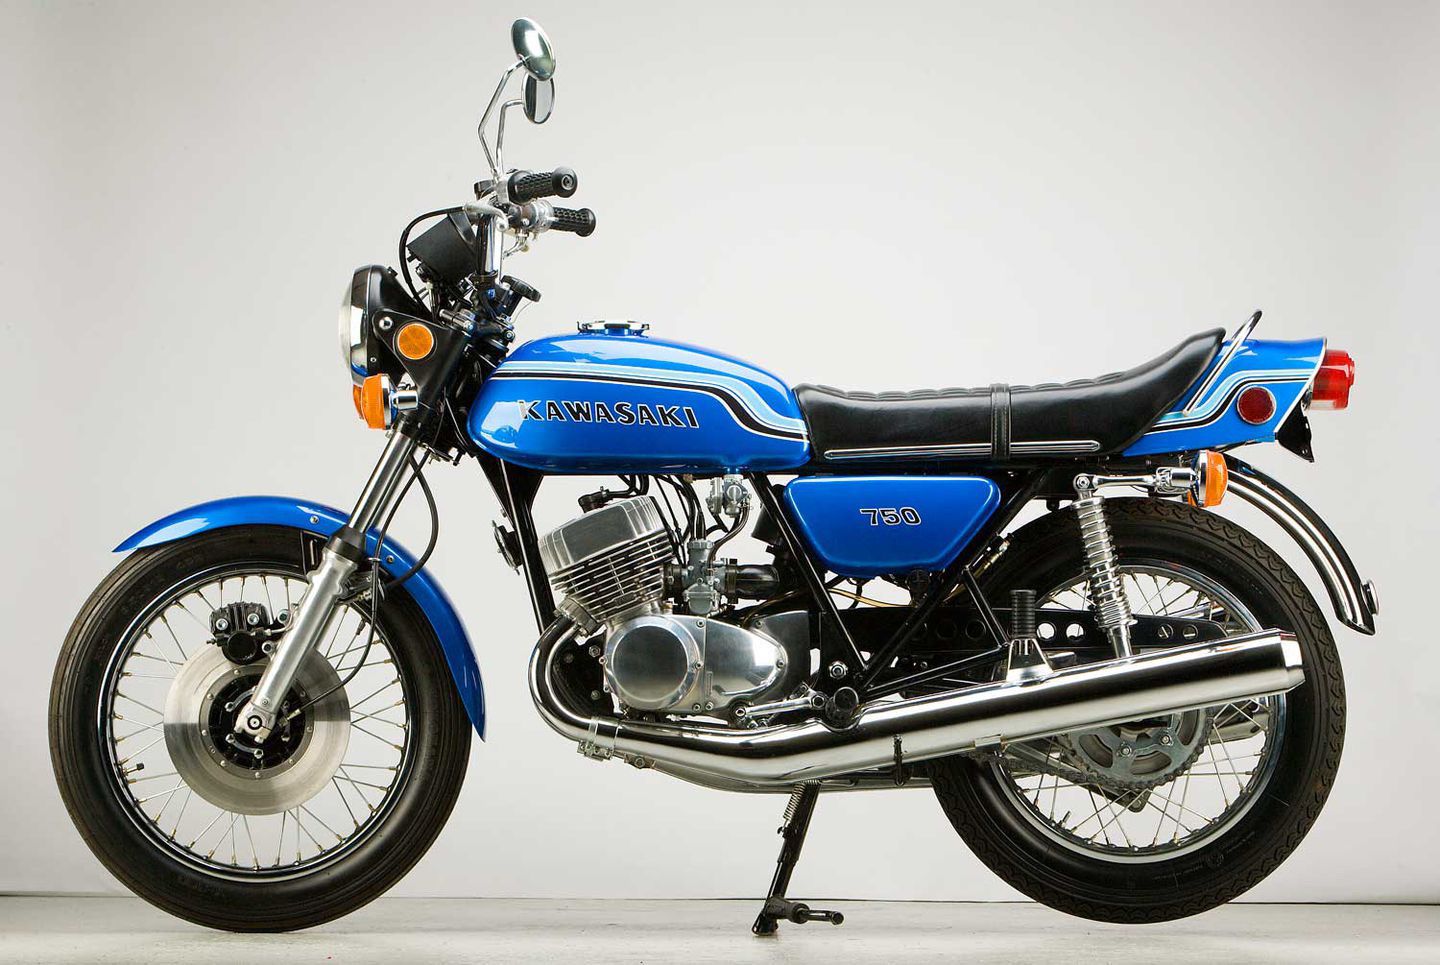 a 1971 Kawasaki H2 Mach IV motorcycle